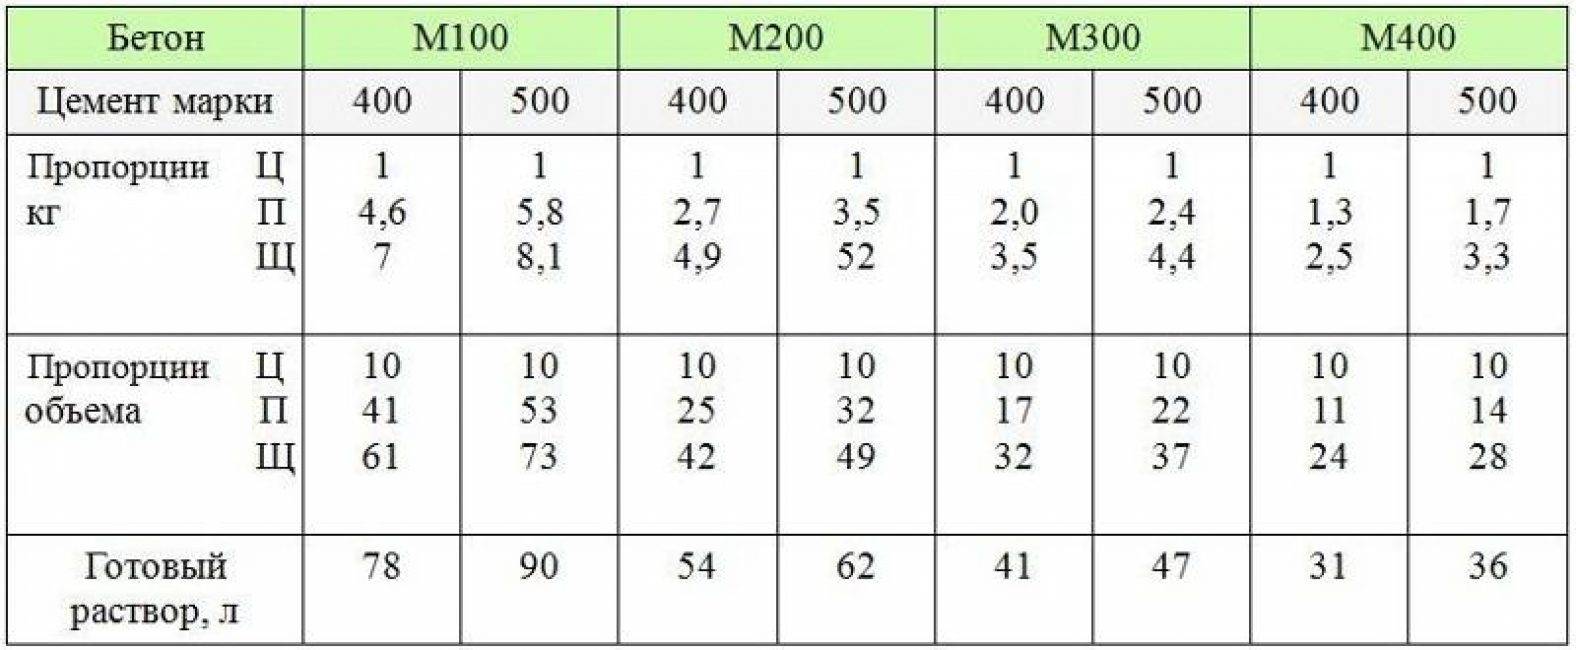 Пропорции м400 бетона